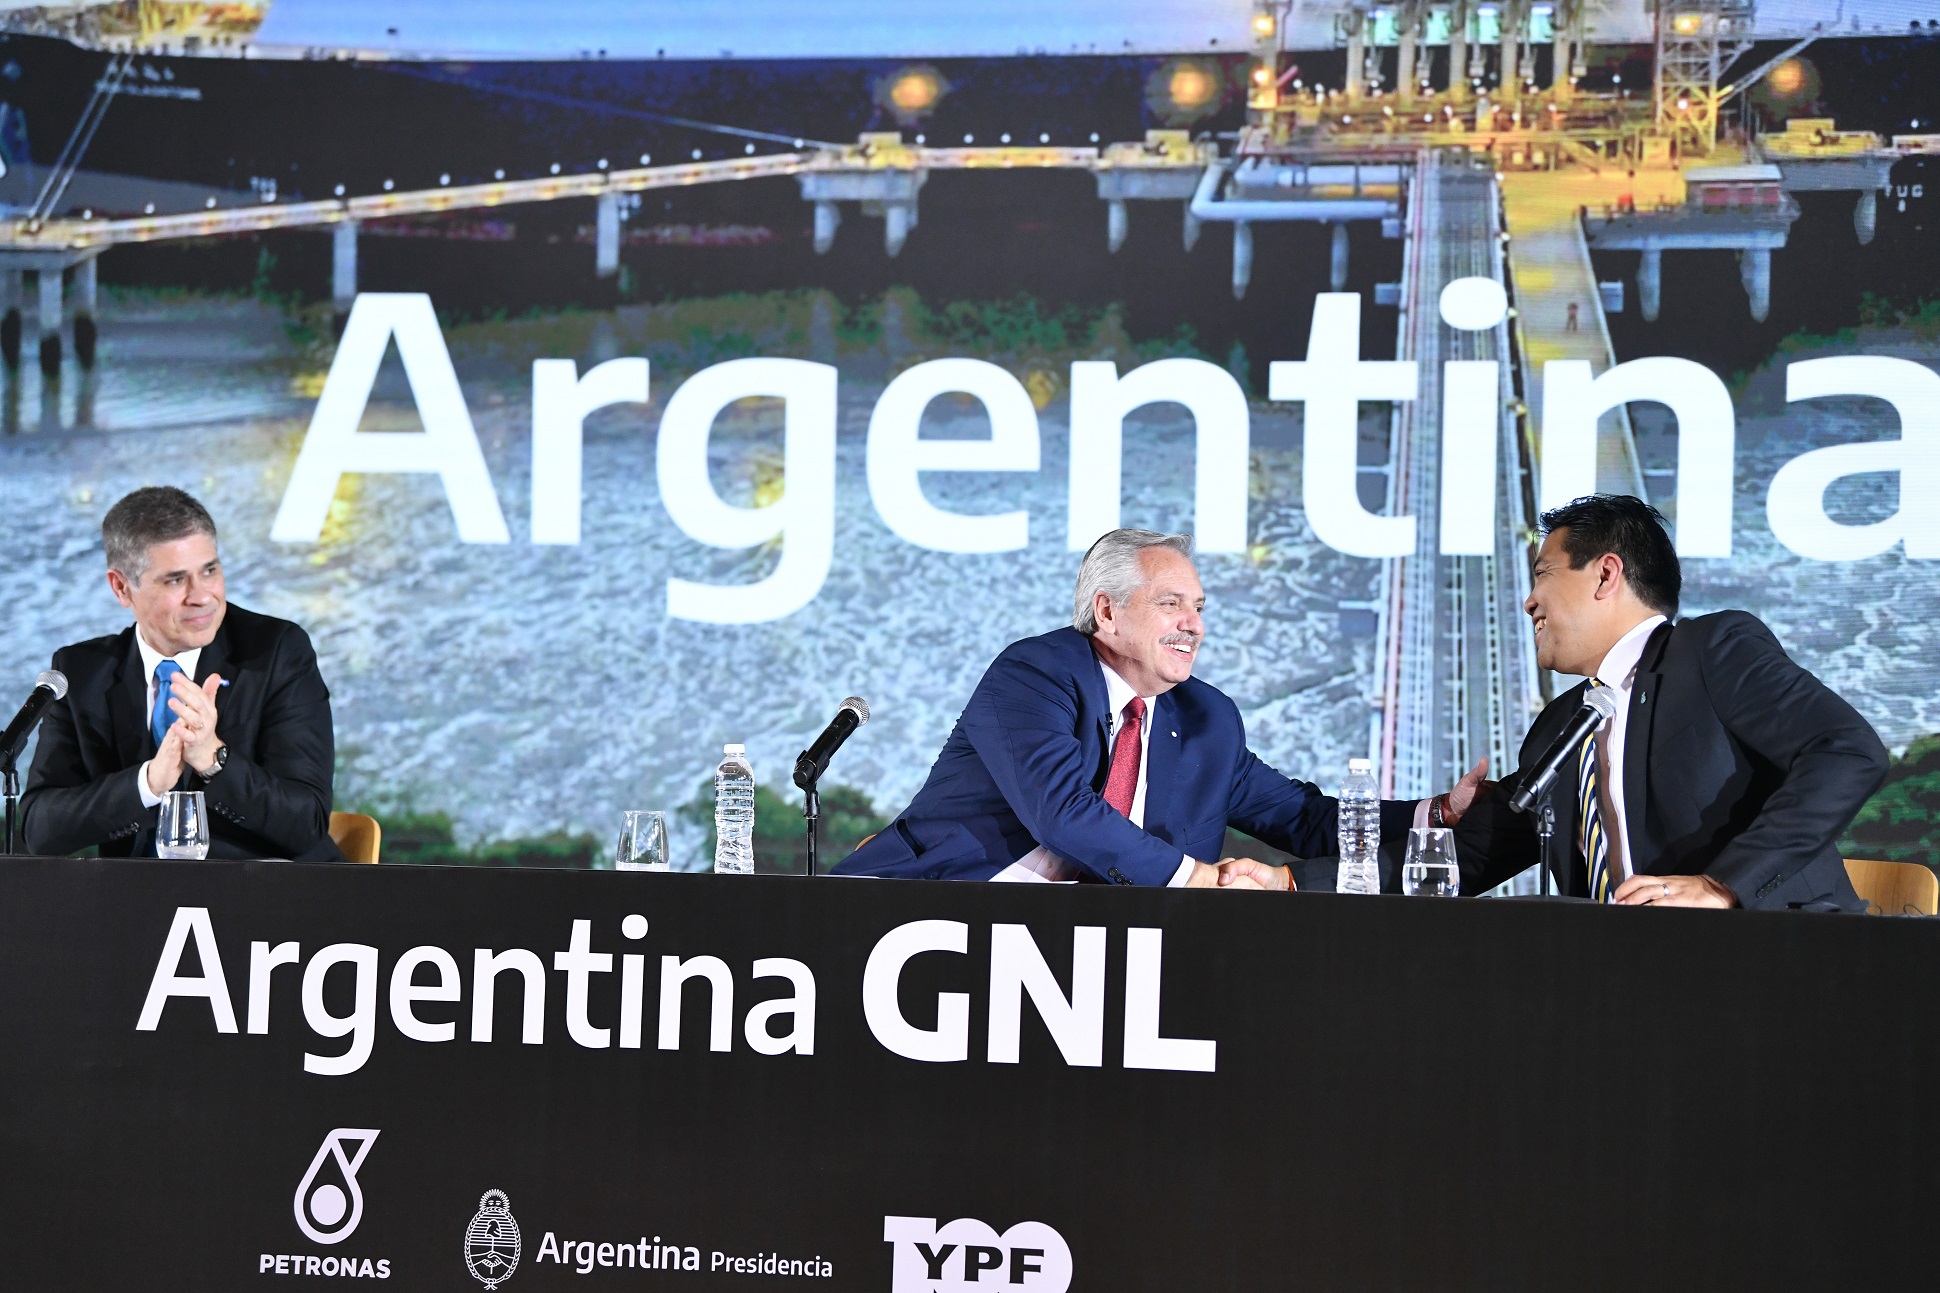 El presidente anunció un acuerdo entre YPF y Petronas para desarrollar una planta productora de GNL que cambiará la matriz energética del país